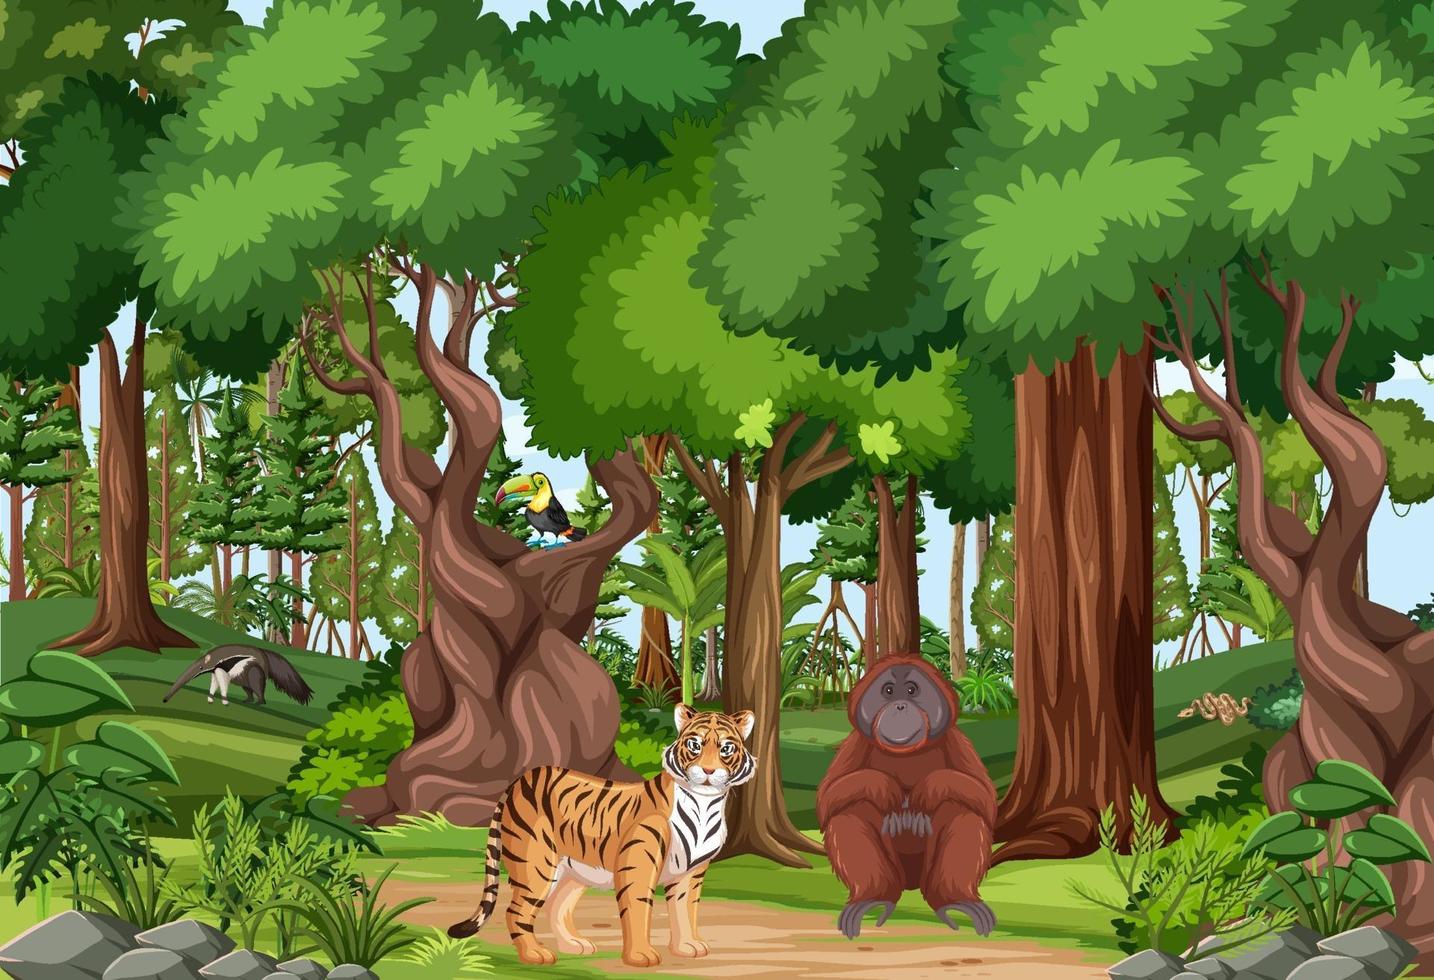 Escena de la selva tropical con varios animales salvajes. vector